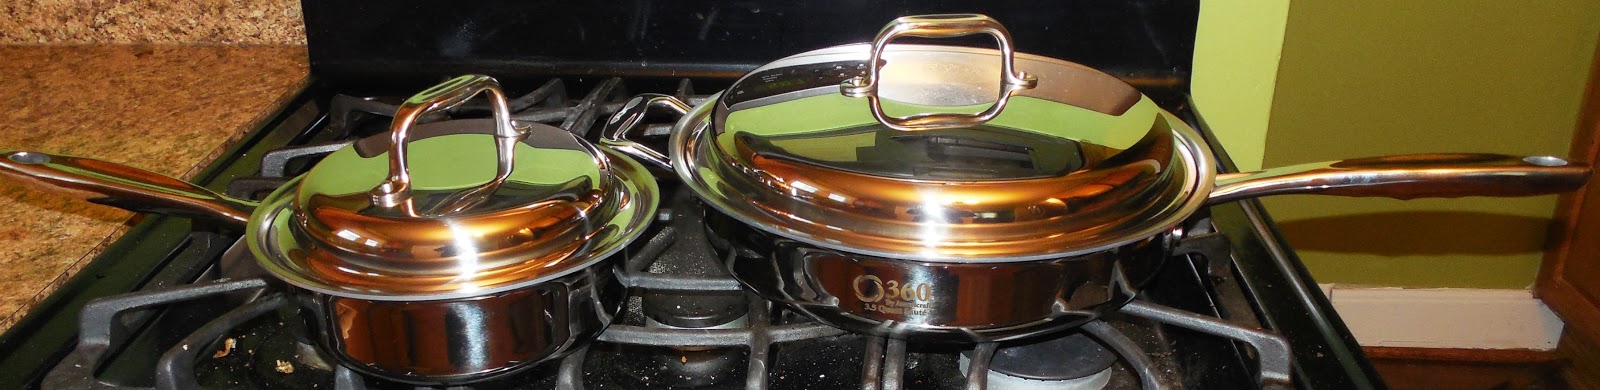 360 Cookware Review + Stir Fry Recipe